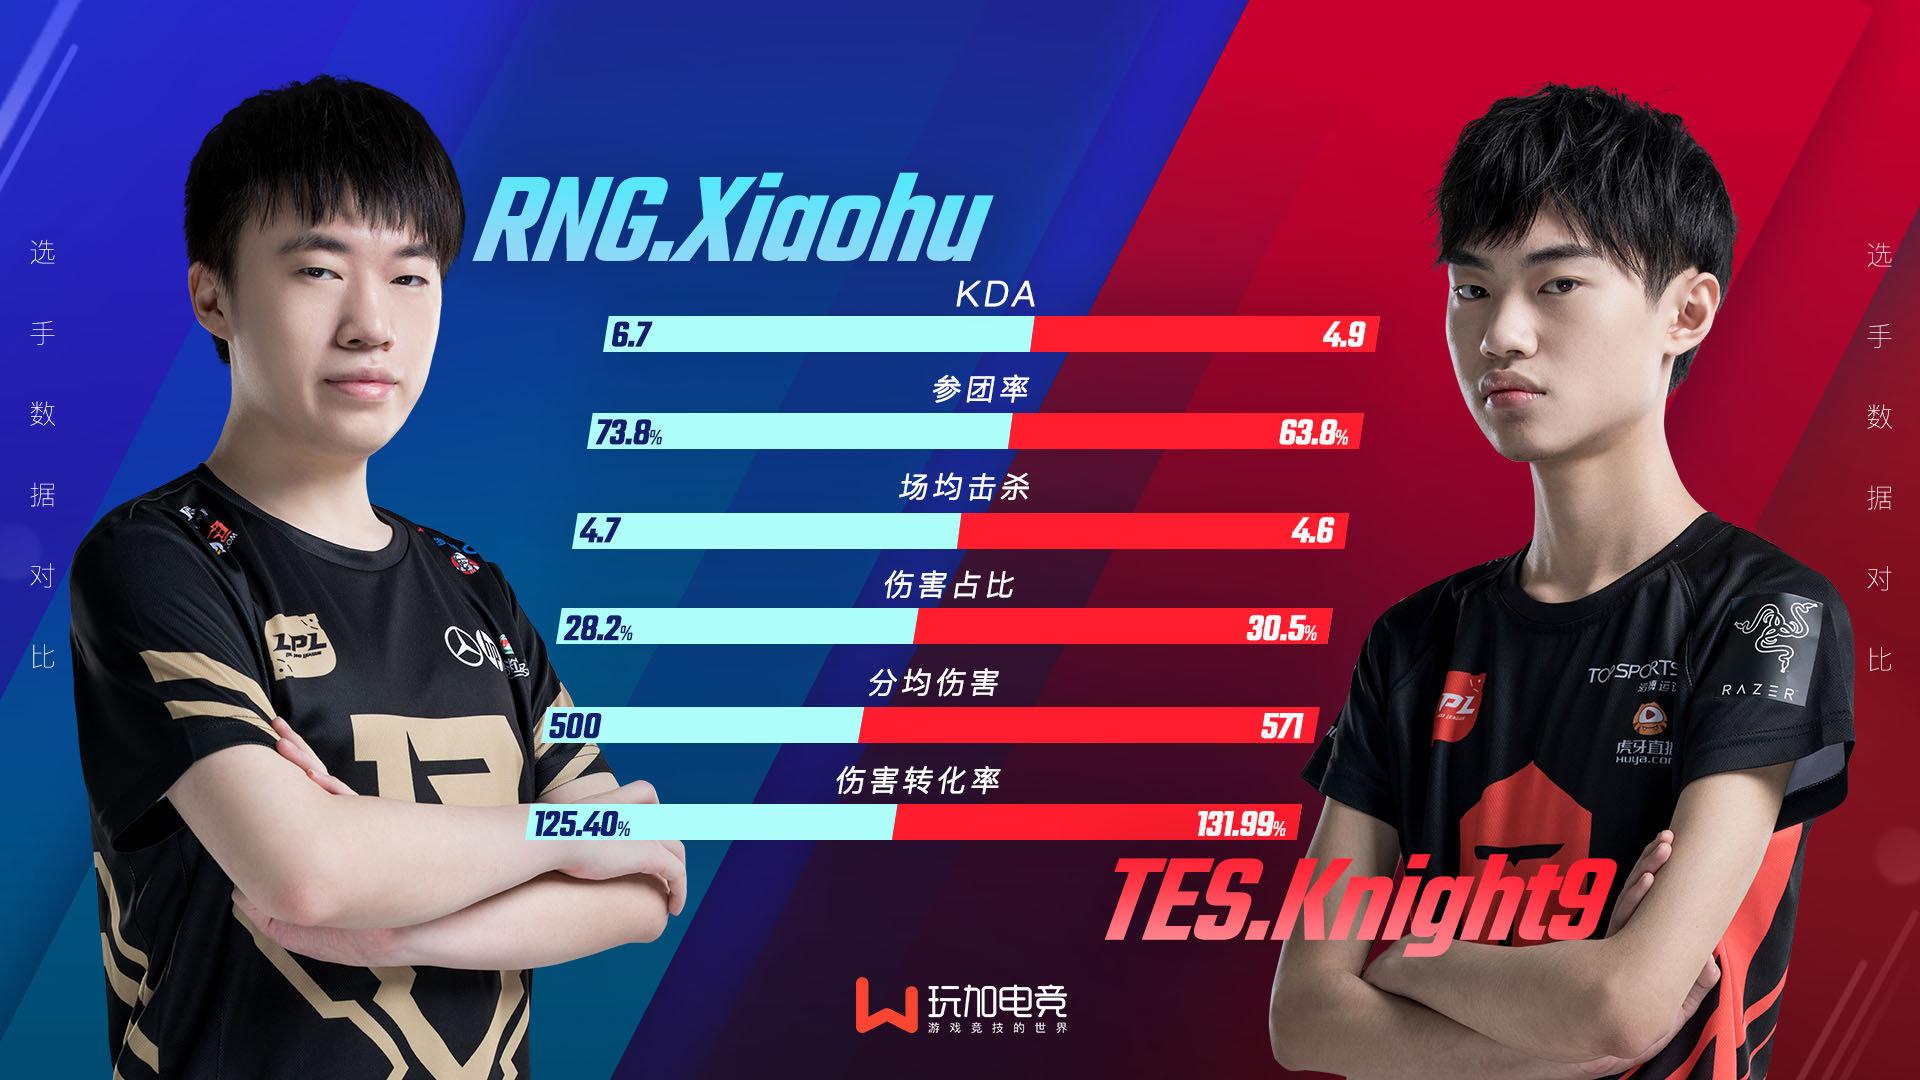 [选手对比] Xiaohu vs Knight9 主导比赛的中路杀神们